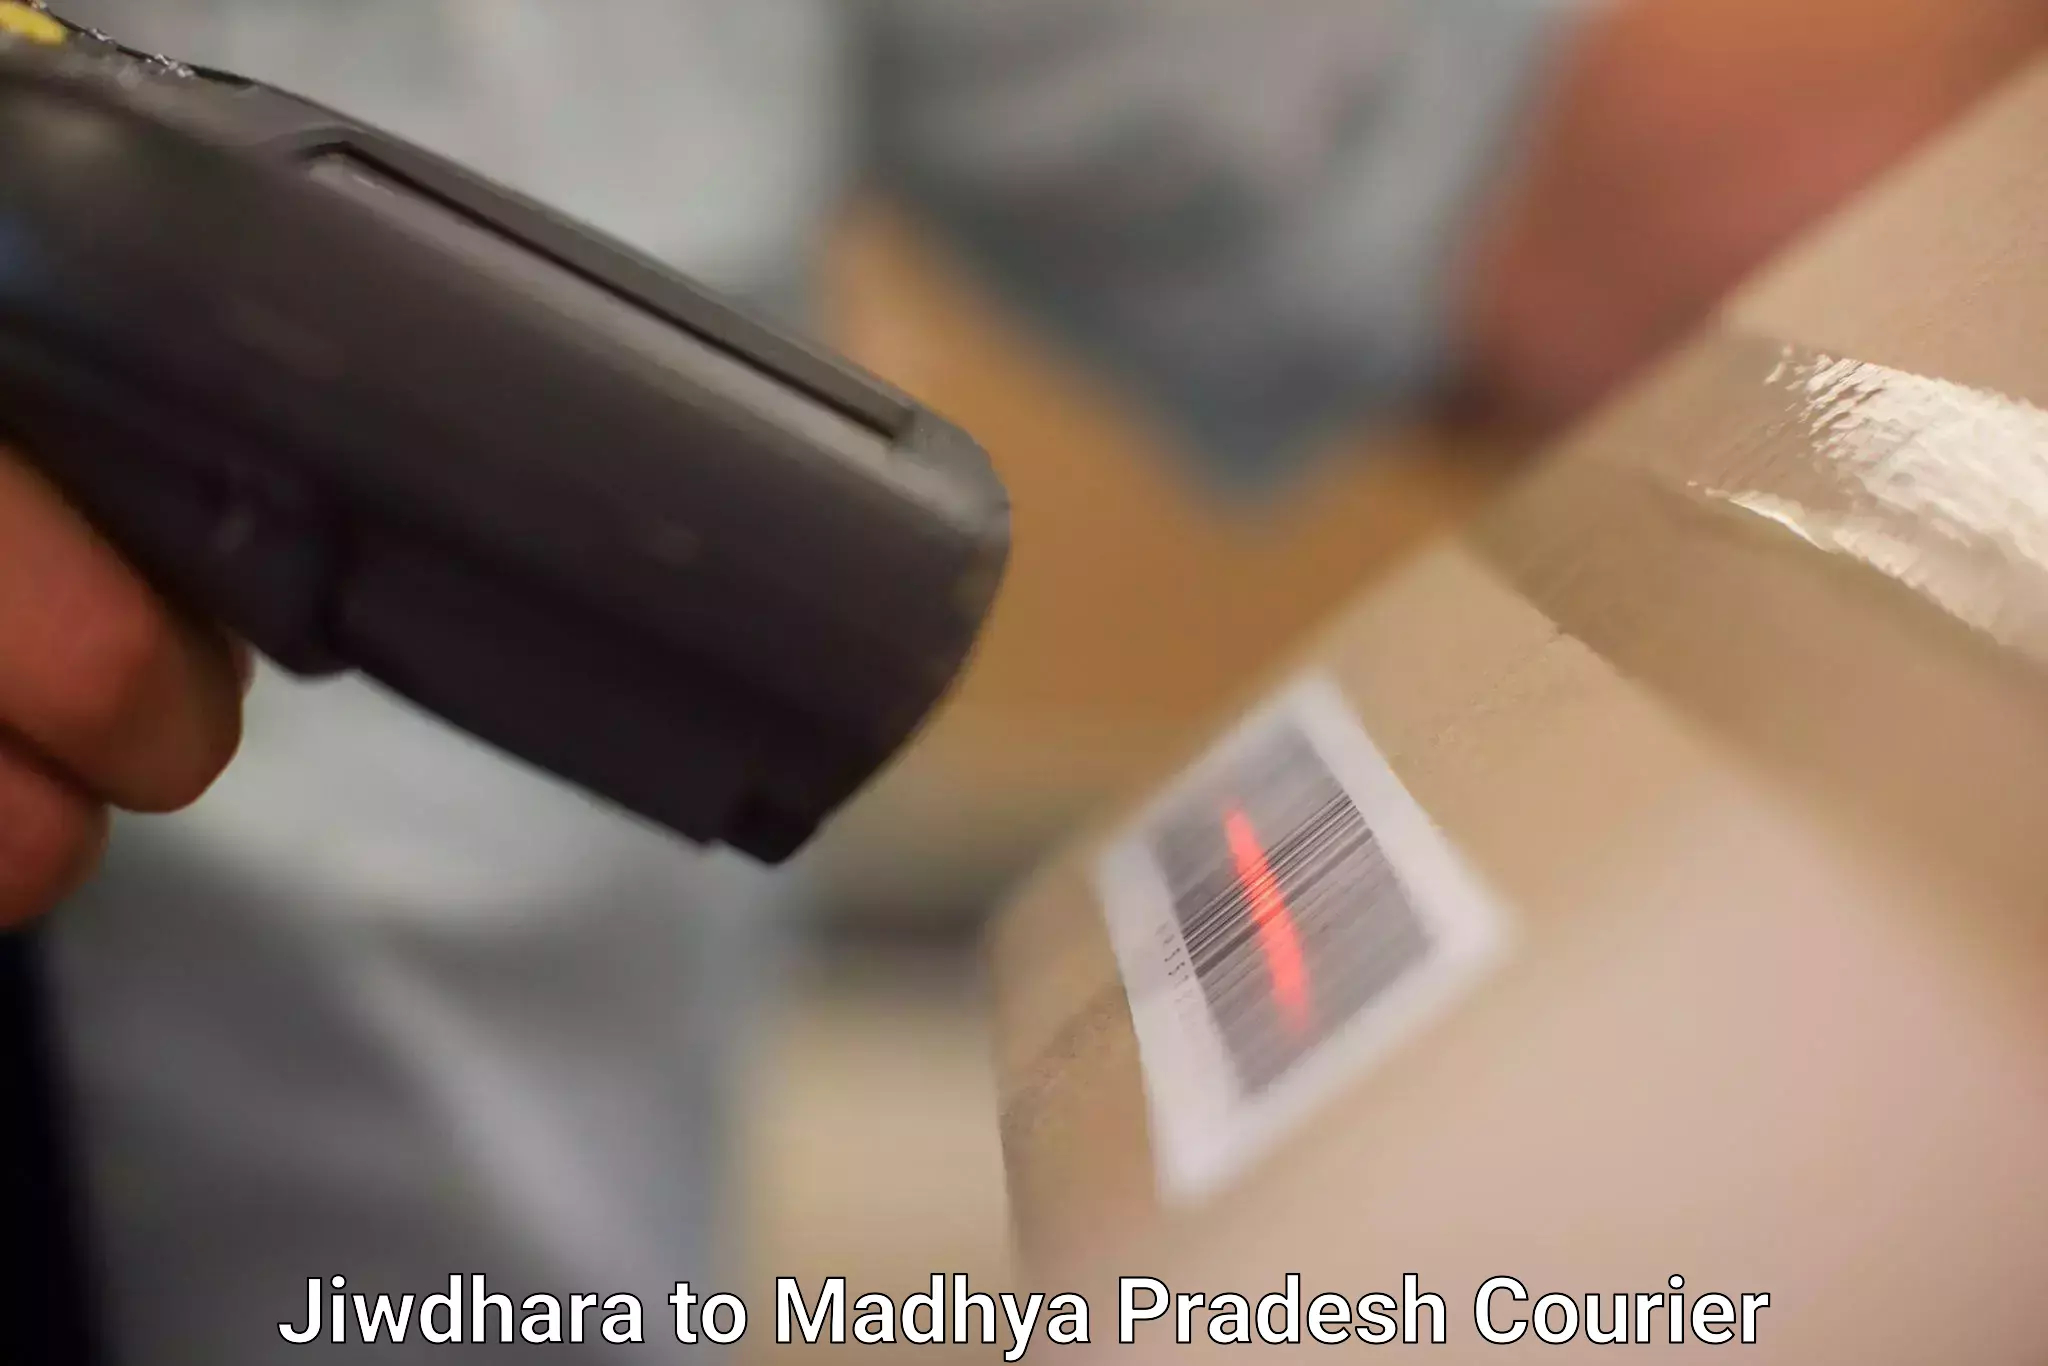 Premium courier services in Jiwdhara to Dewas